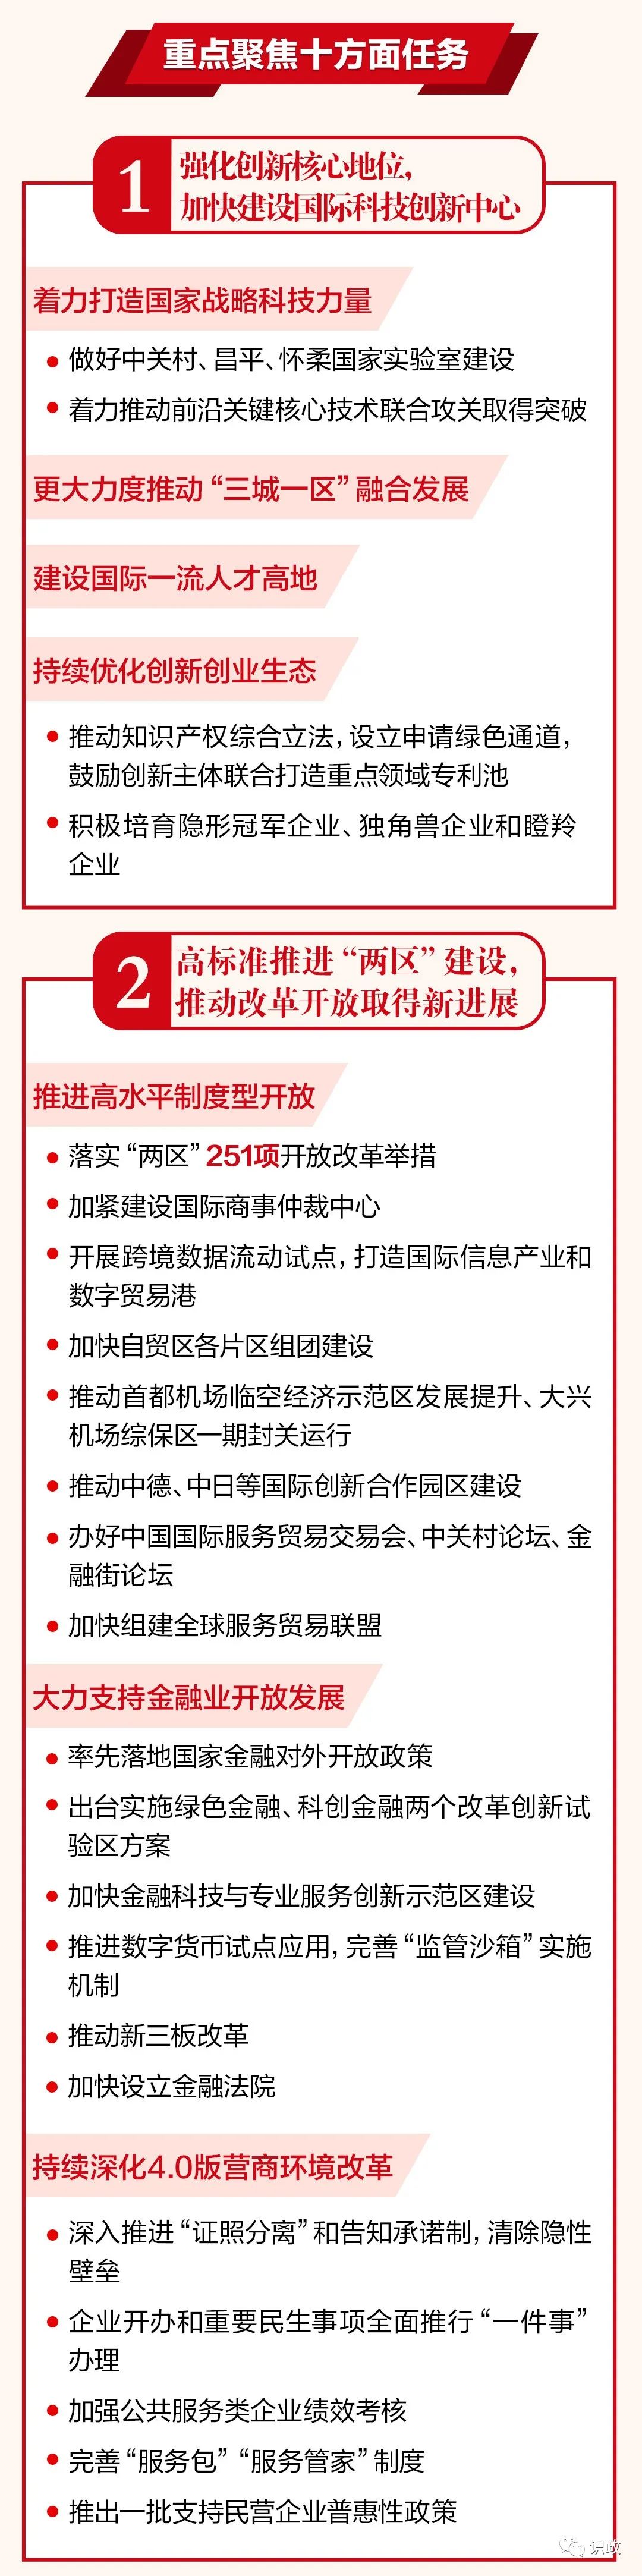 一图读懂北京市政府工作报告